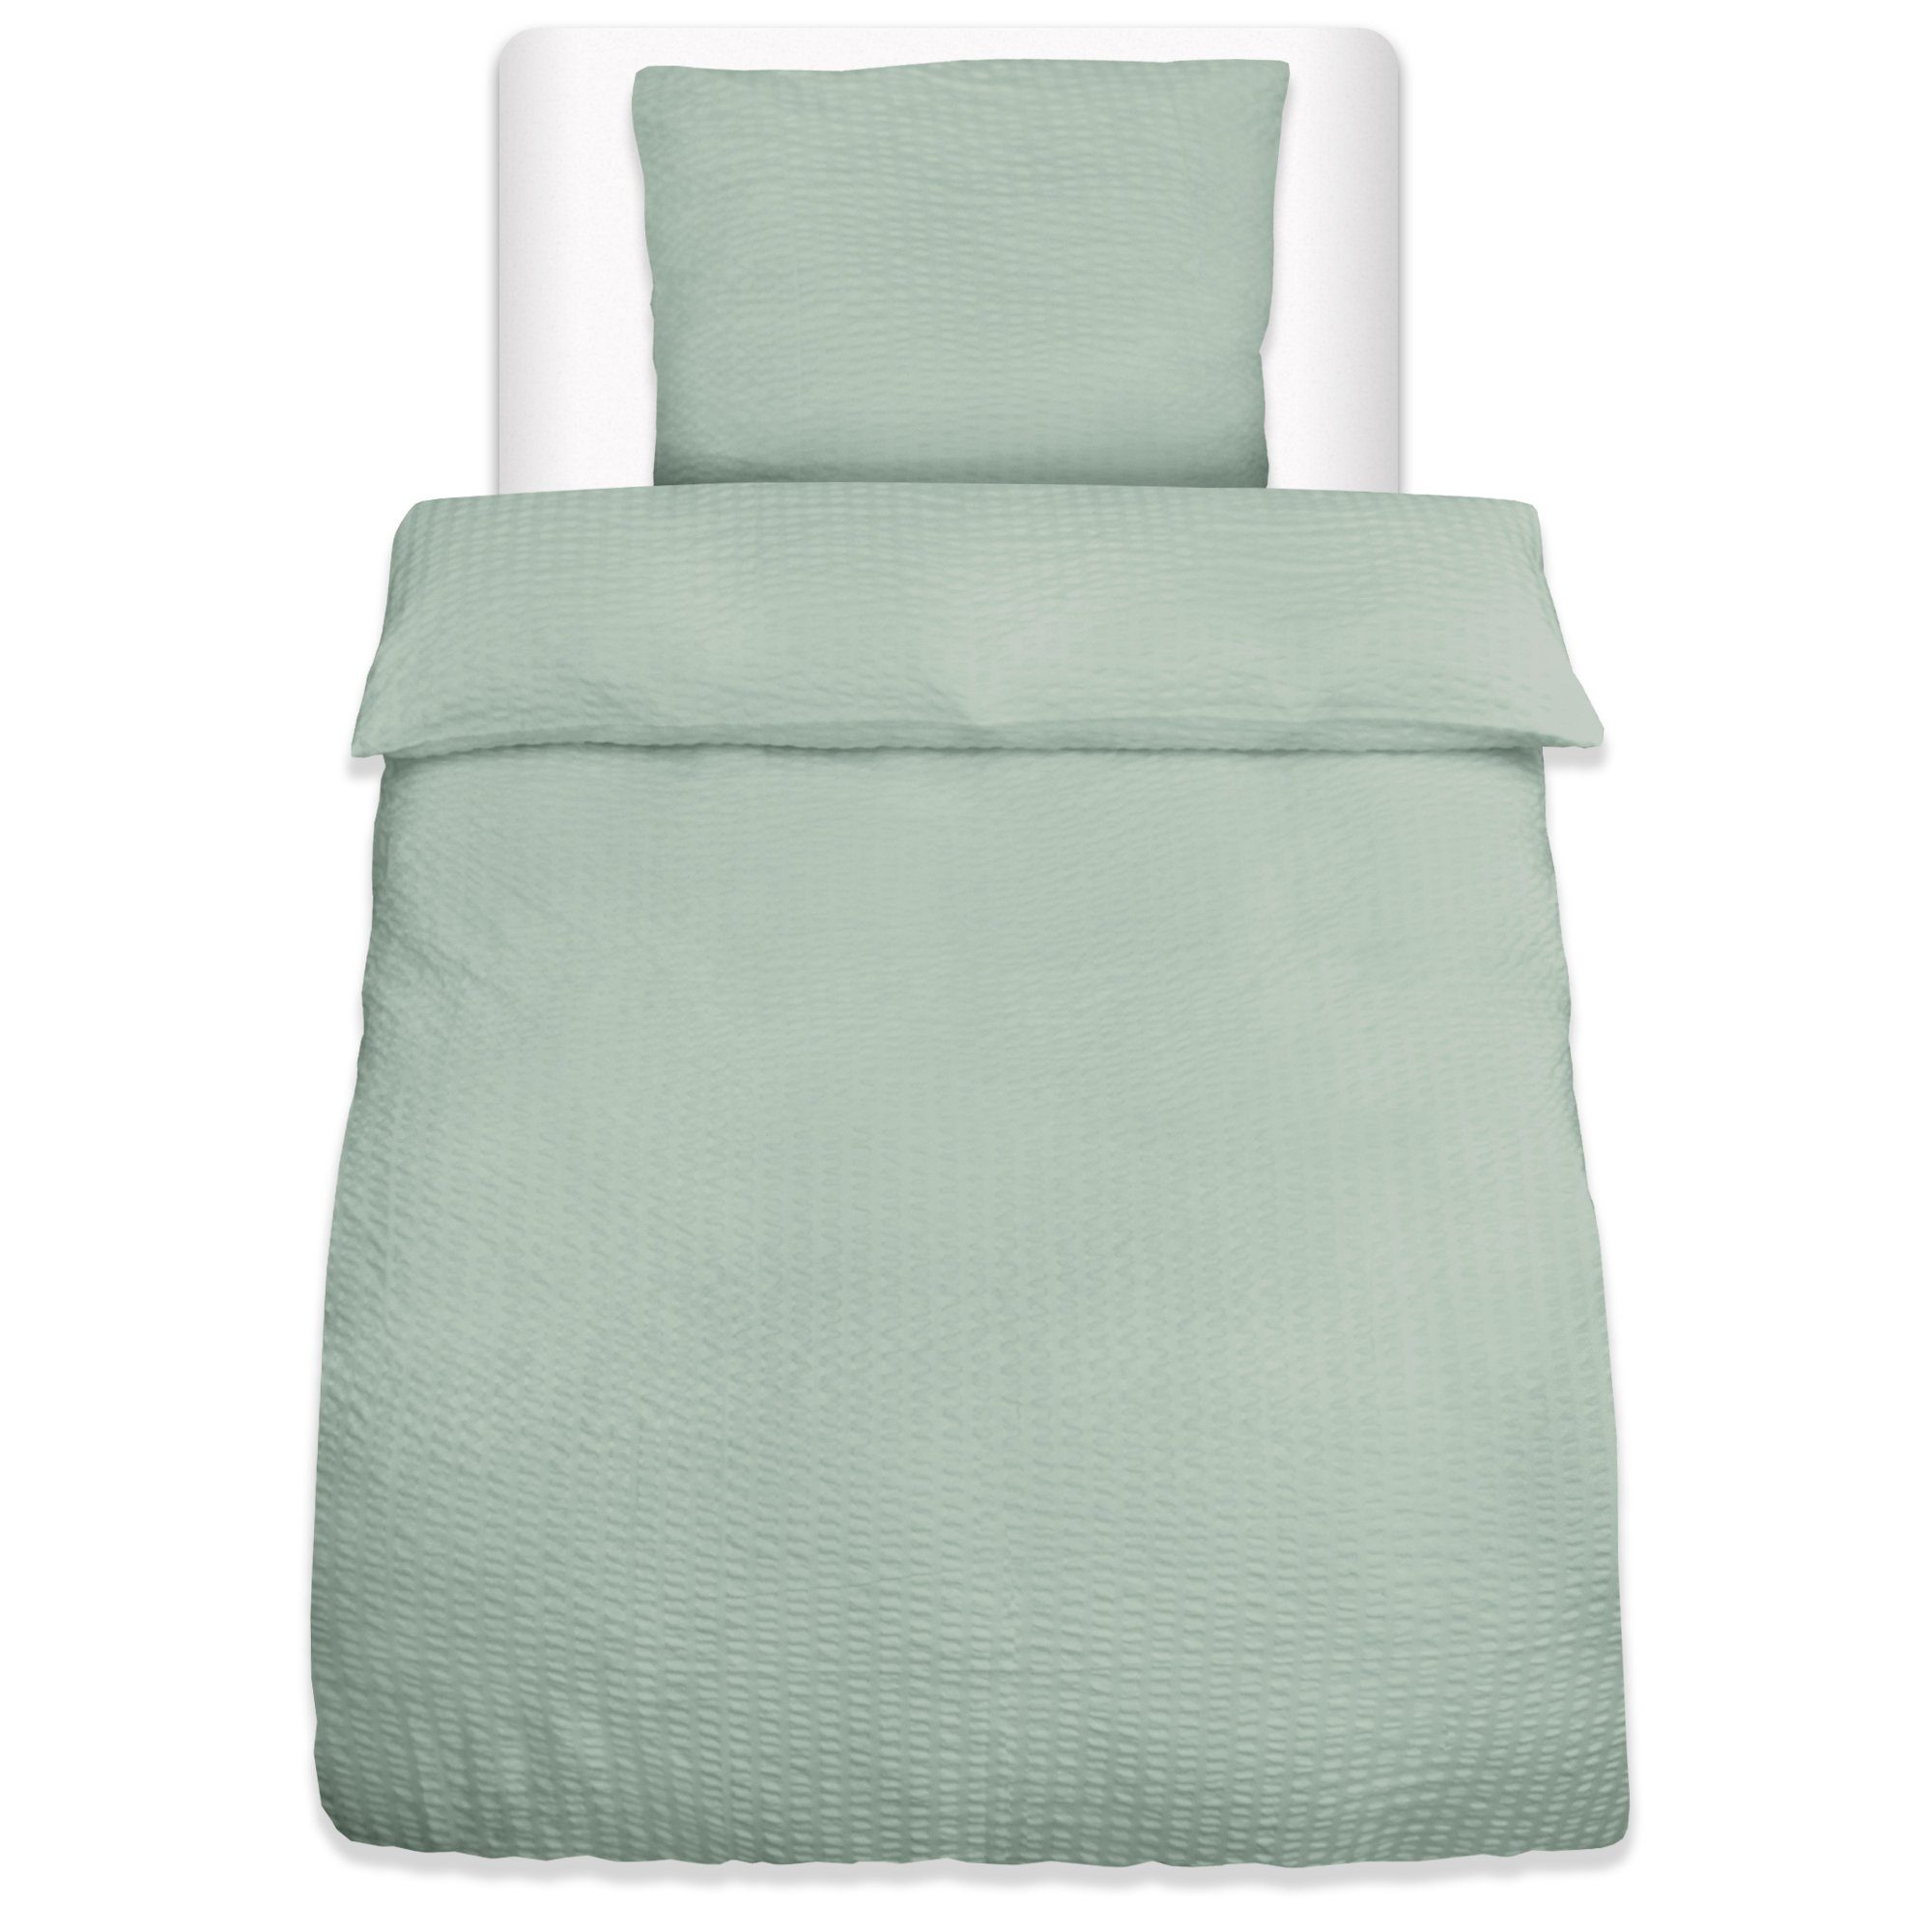 Bettwäsche Meline, Beautissu, 100% Polyester, 2 teilig, Seersucker Bettwäsche Set mit Reißverschluss